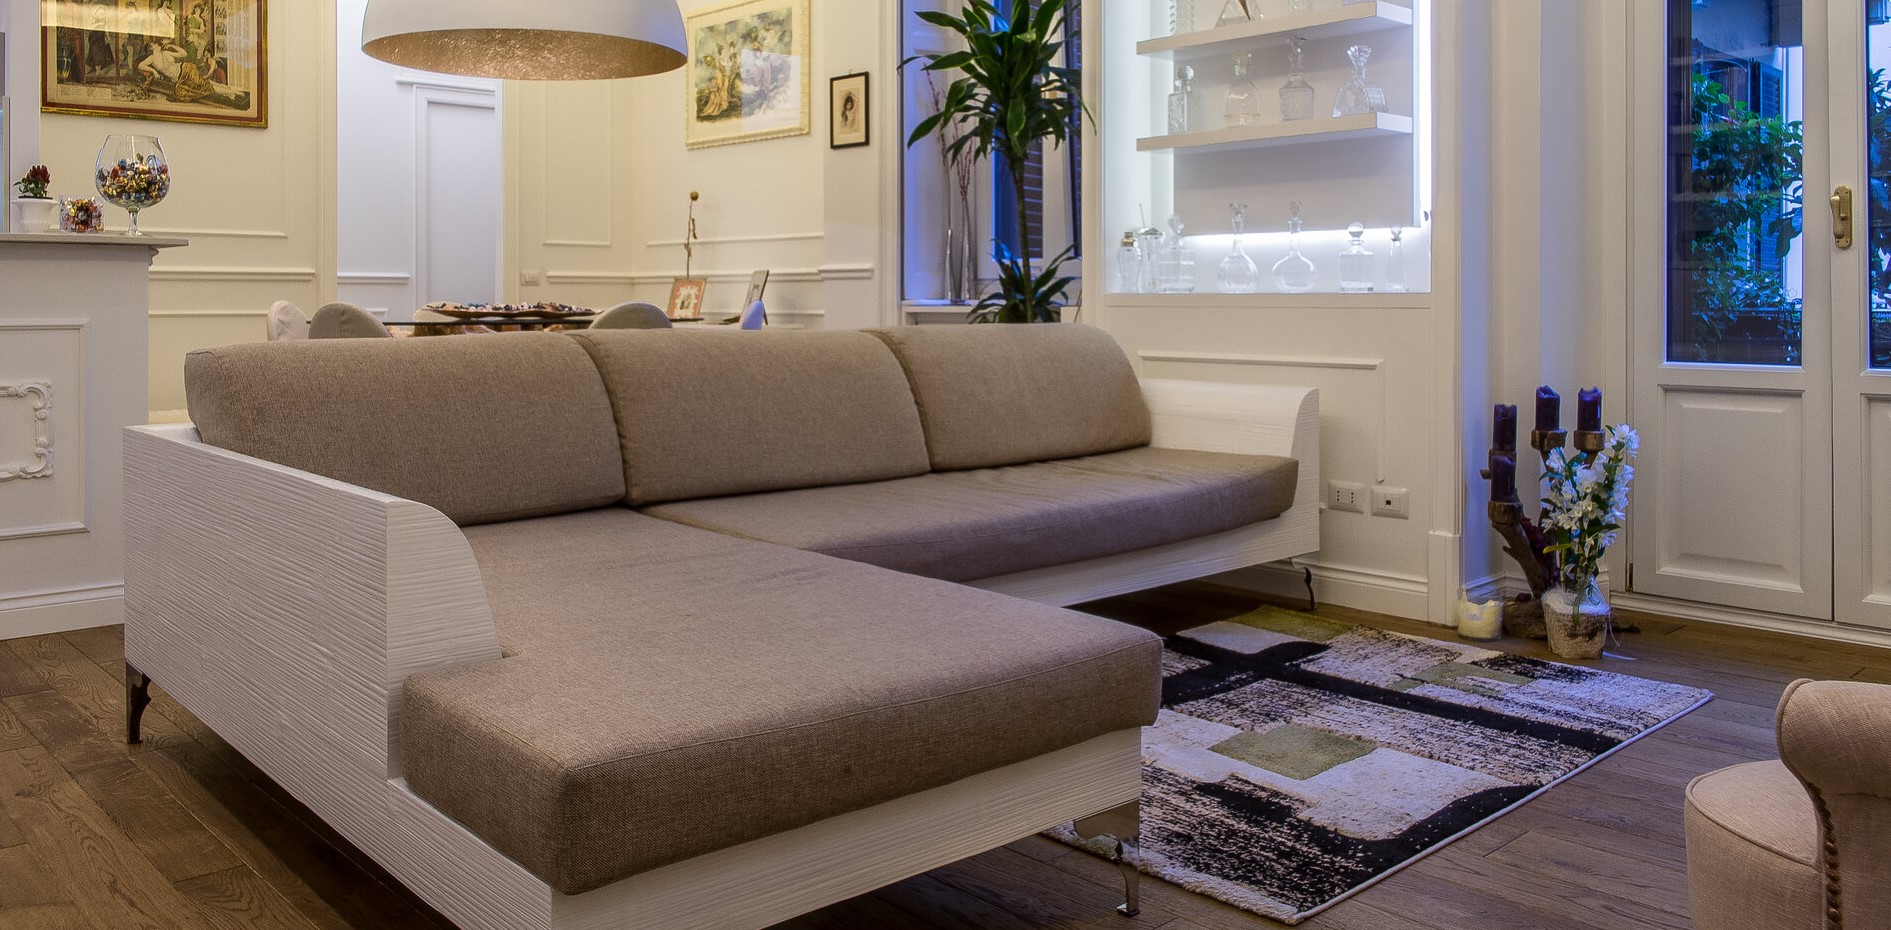 Каркас дивана прекрасно сочетается по цвету с мебелью в интерьере